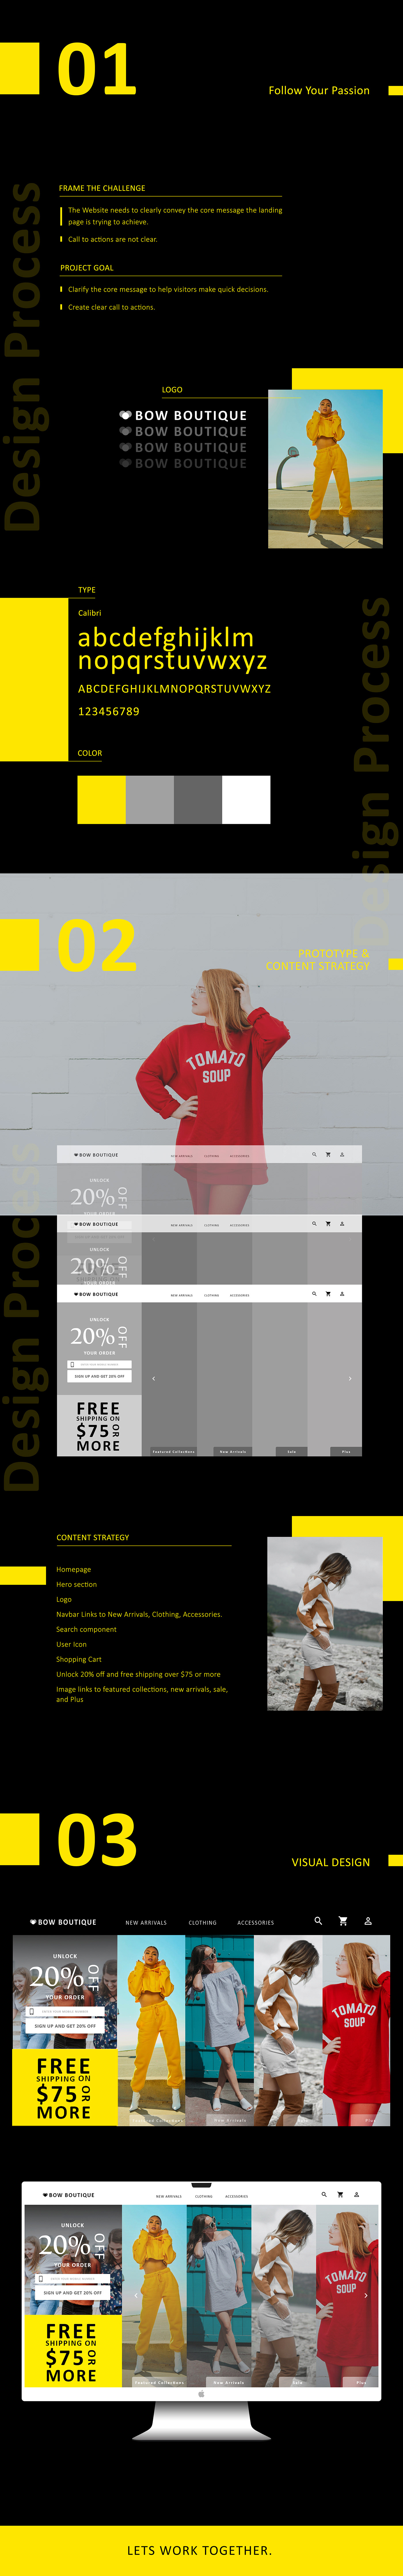 websites Web Design  Fashion  Clothing ui design graphic design  clean minimalist Graphic Designer